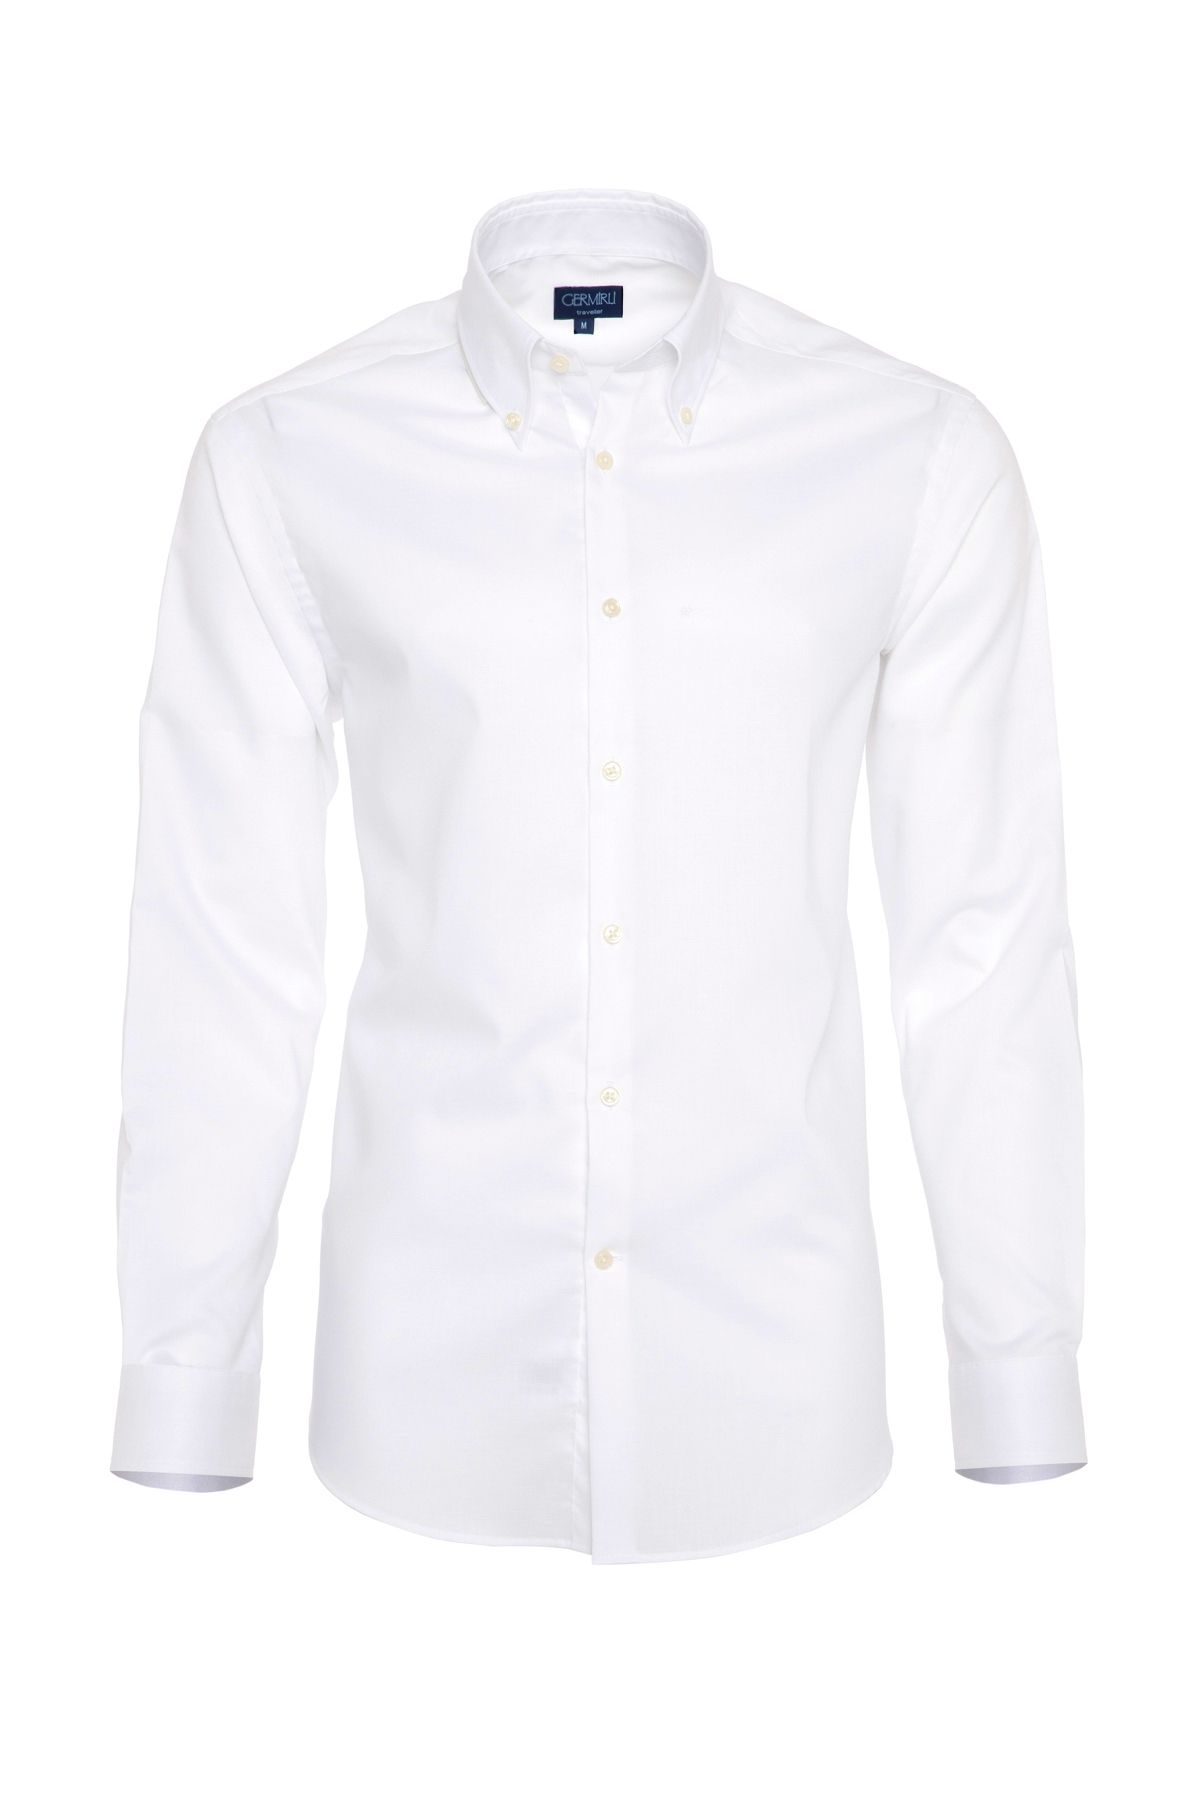 Germirli Non Iron Beyaz Oxford Düğmeli Yaka Tailor Fit Gömlek